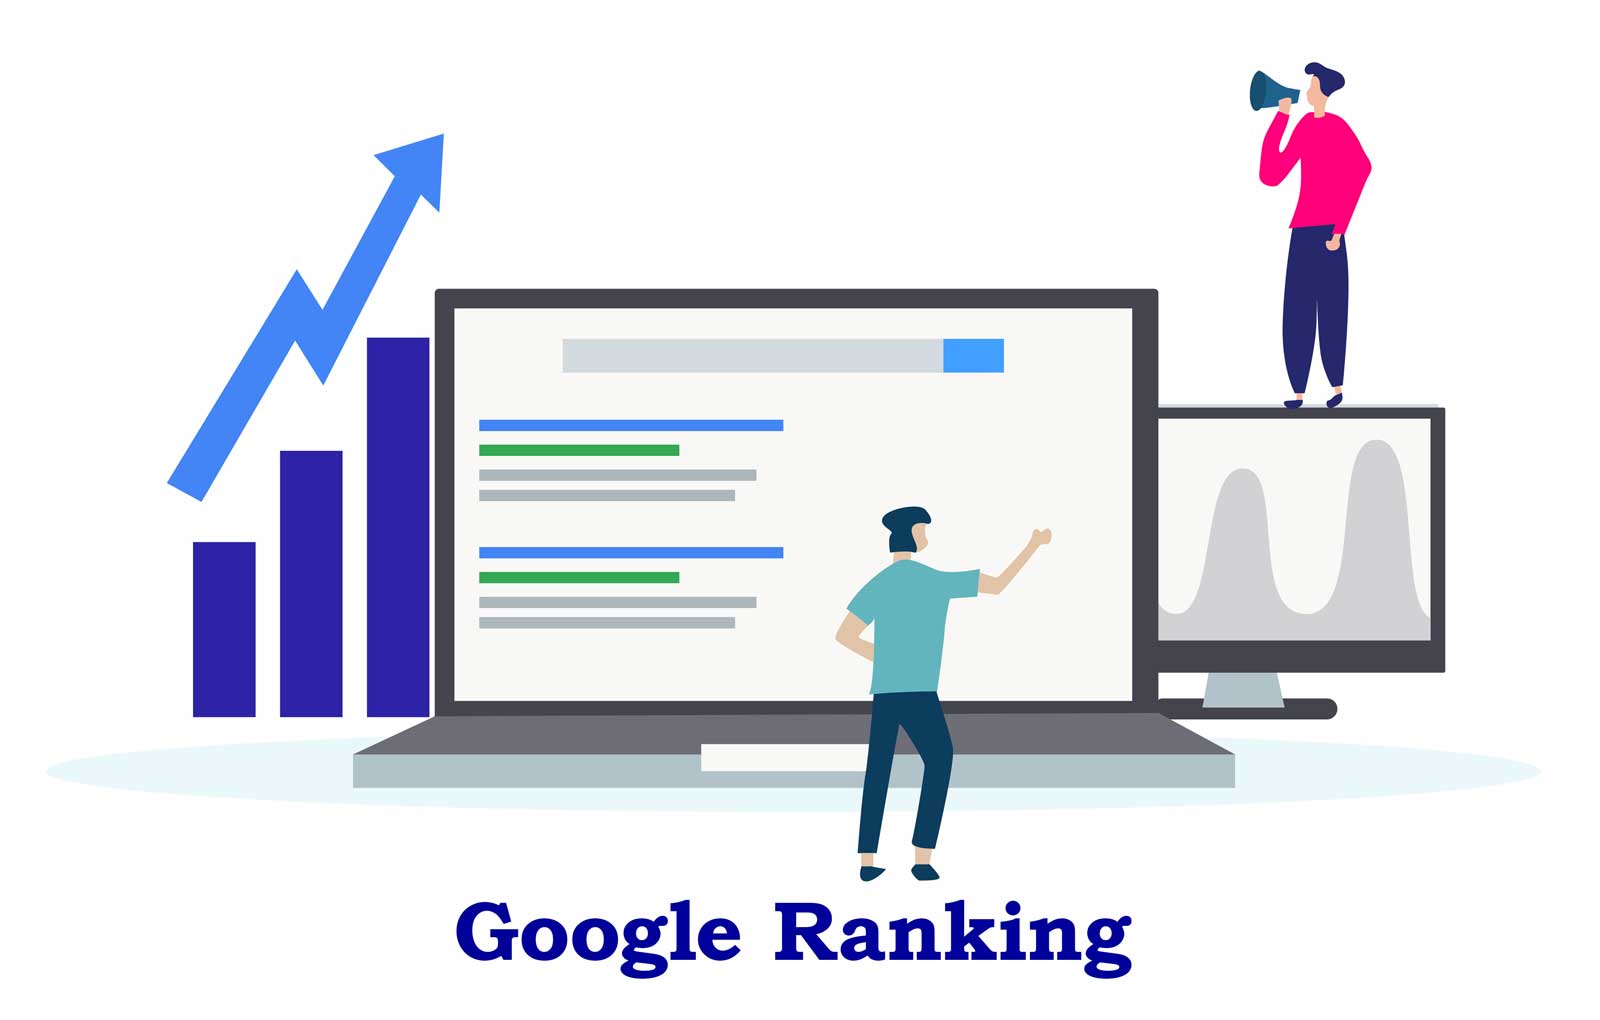 Besser als Ihre Konkurrenz! Mit diesen Tipps werden Sie ganz schnell ein besseres Google Ranking erzielen.